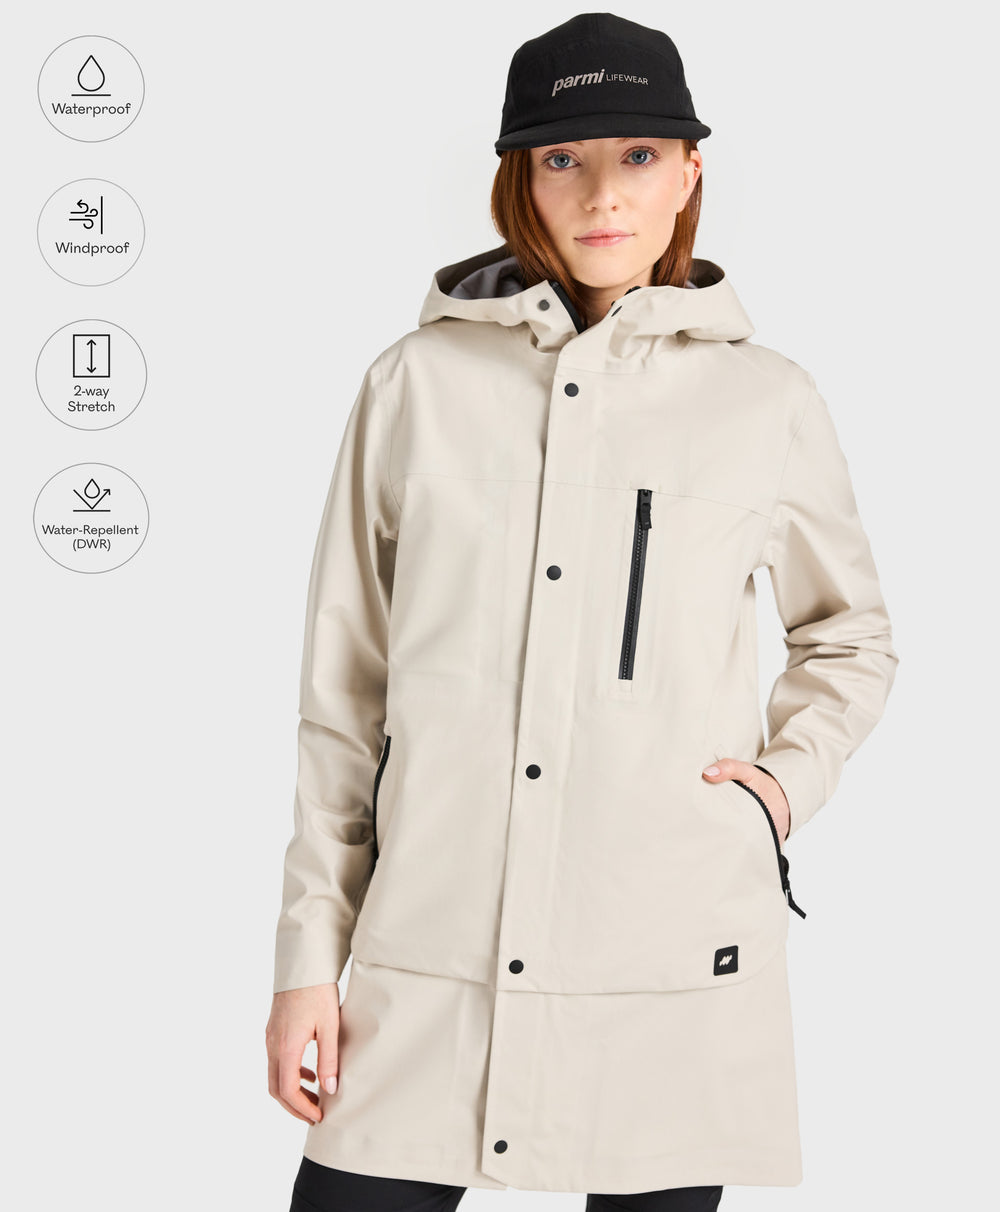 Women's Long Rain Jacket